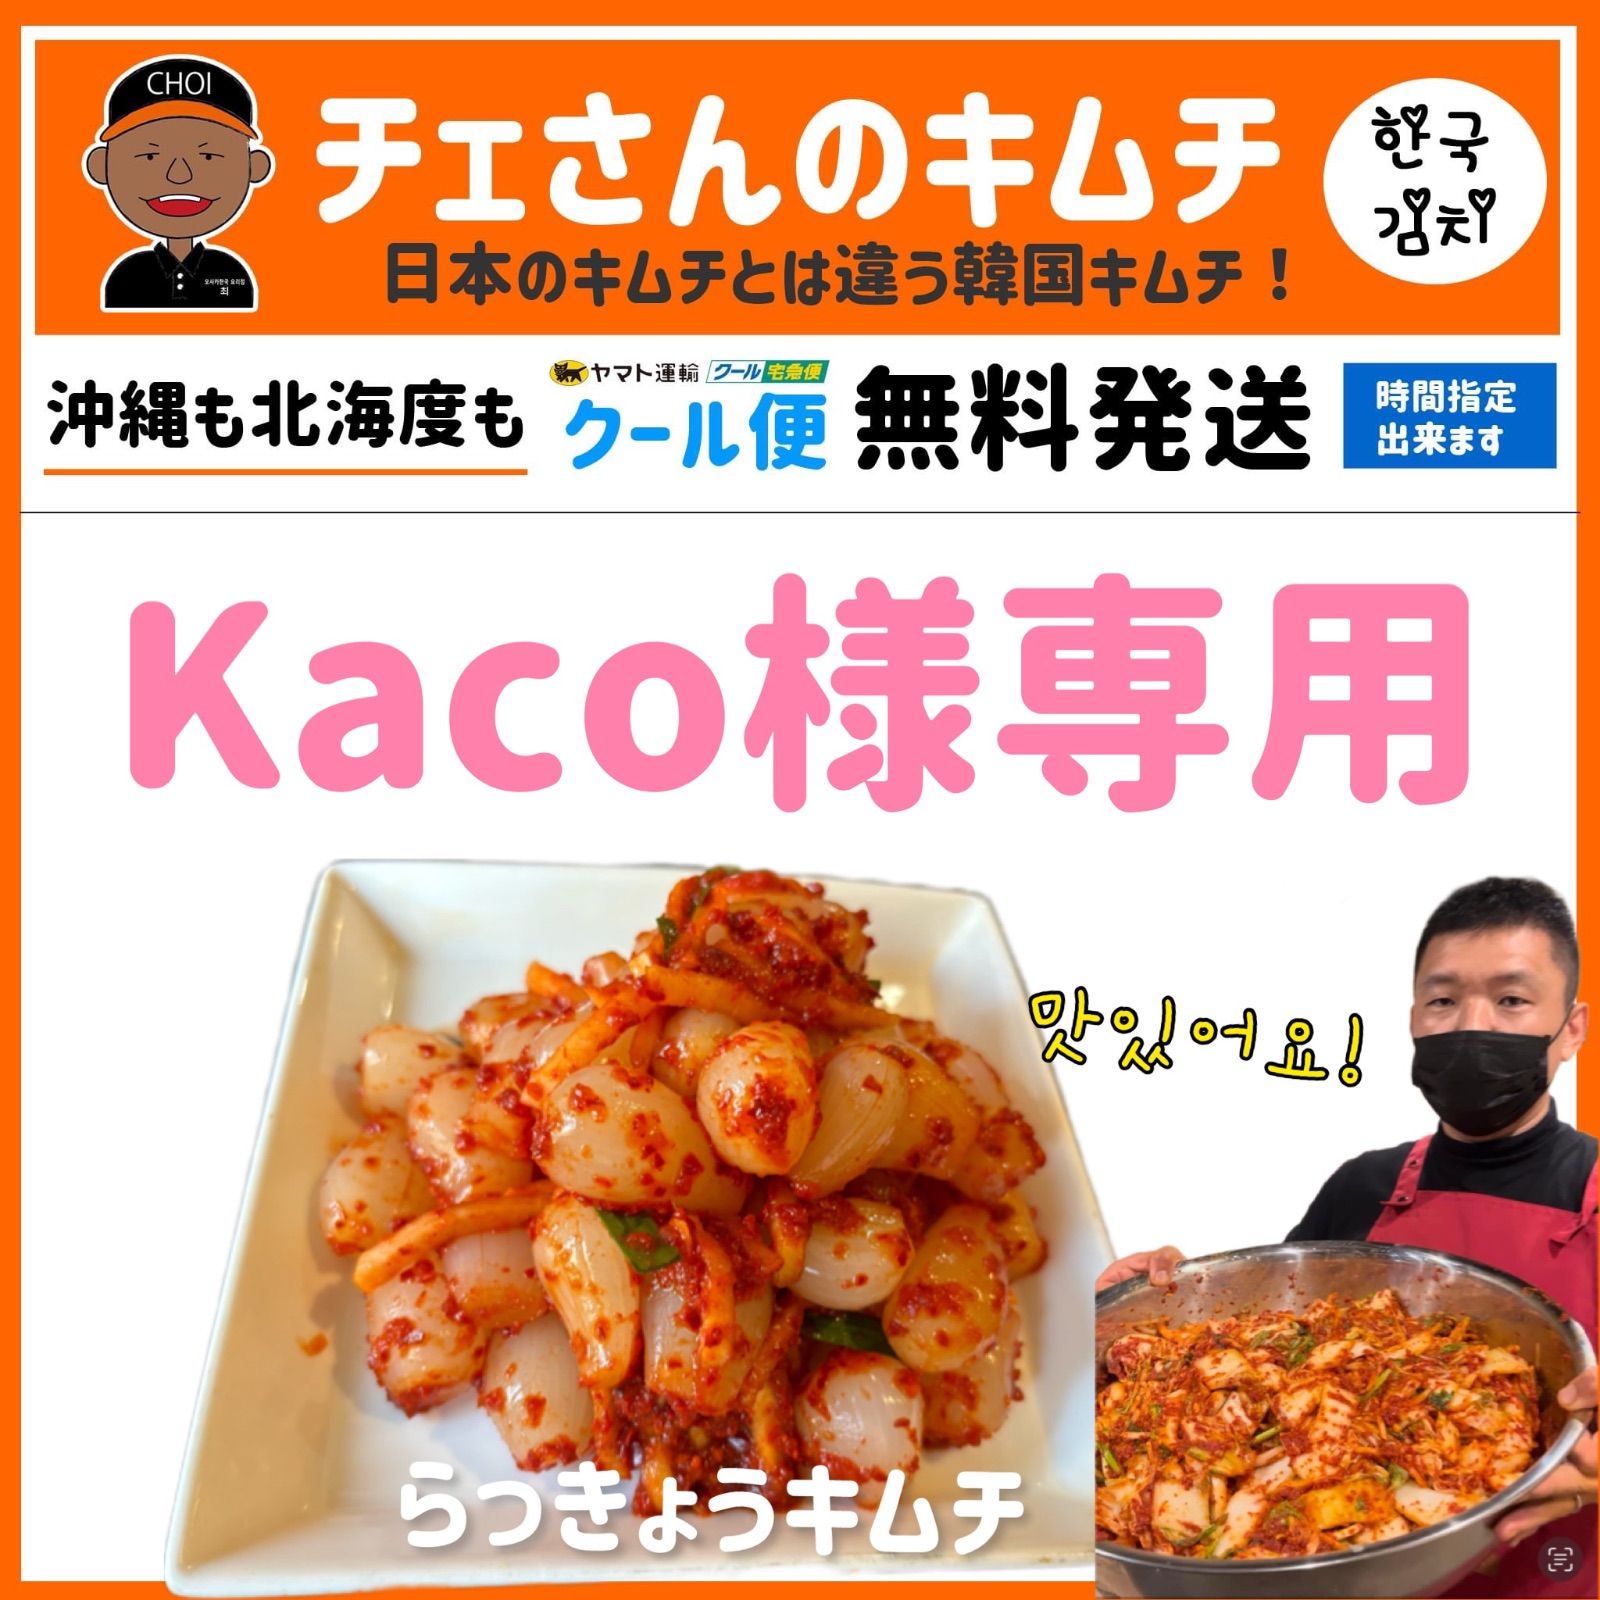 高価買蔵kaco様専用 ダイエット食品